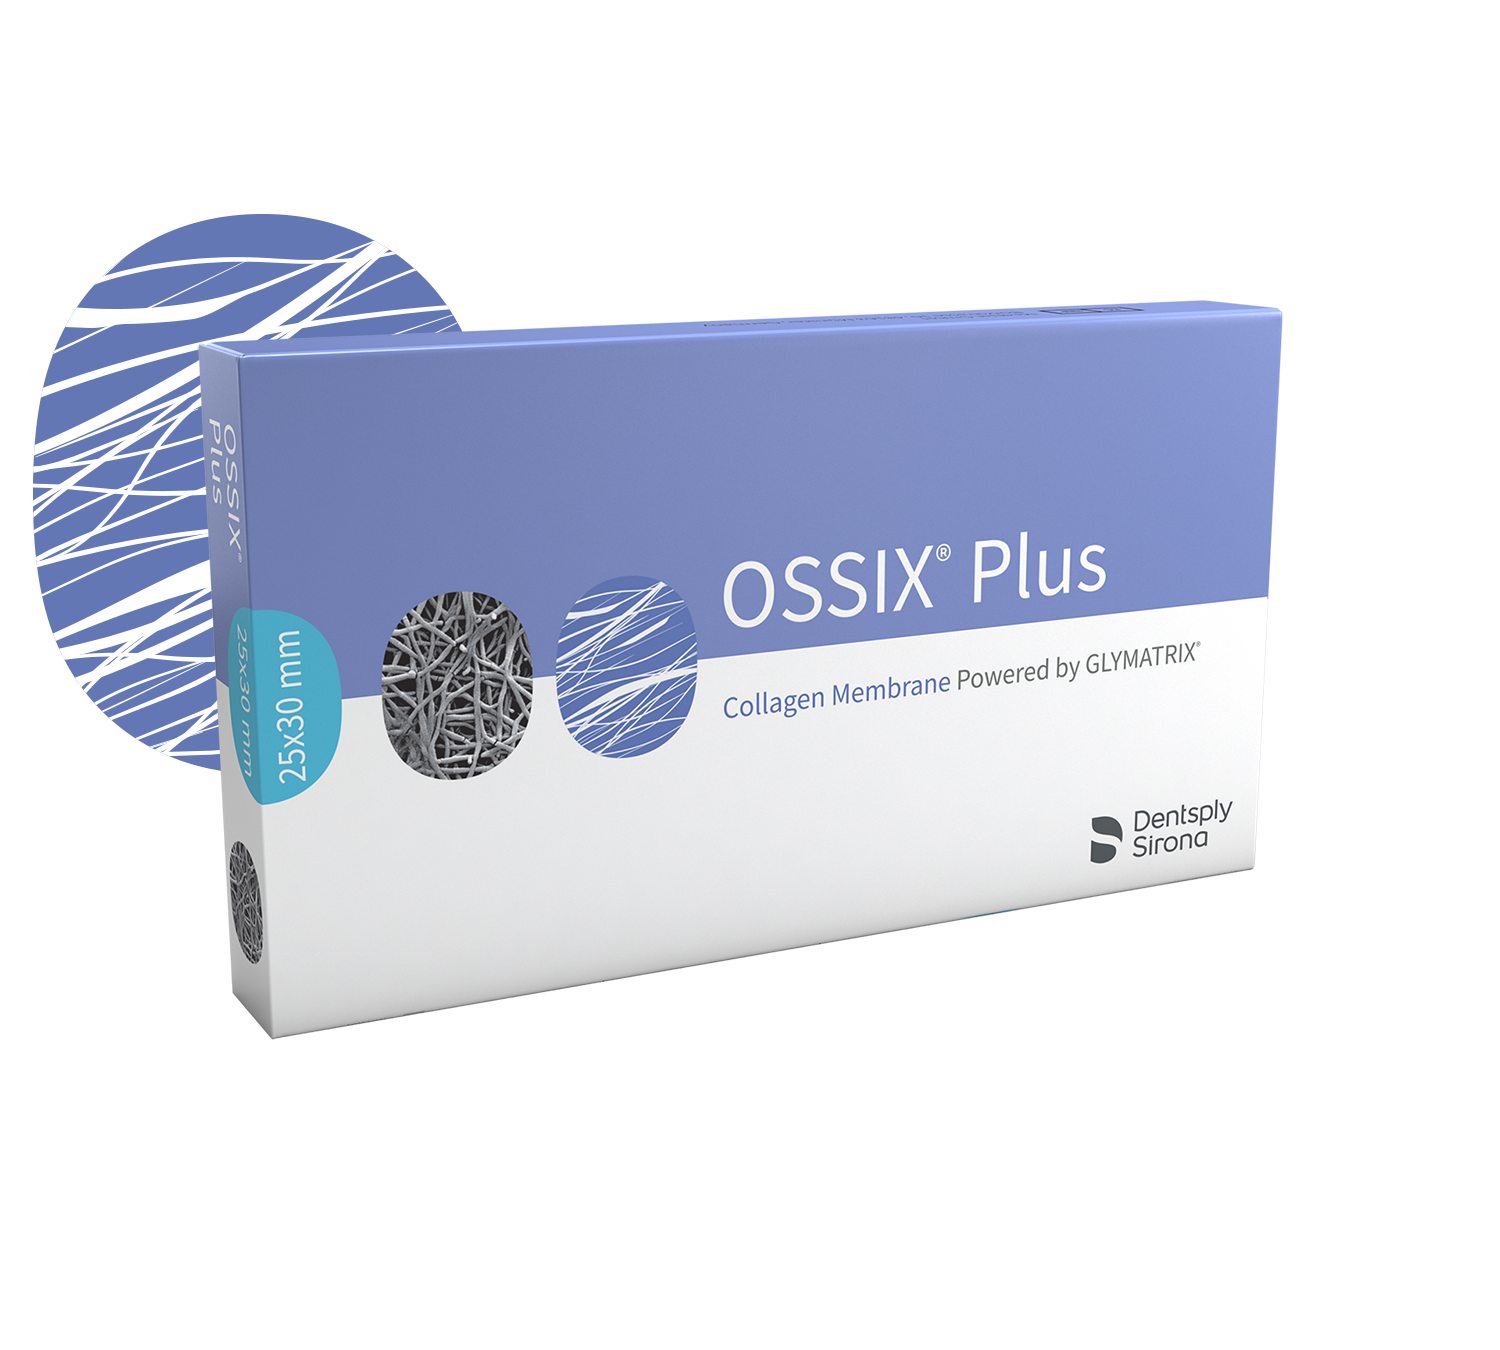 OSSIX® Plus